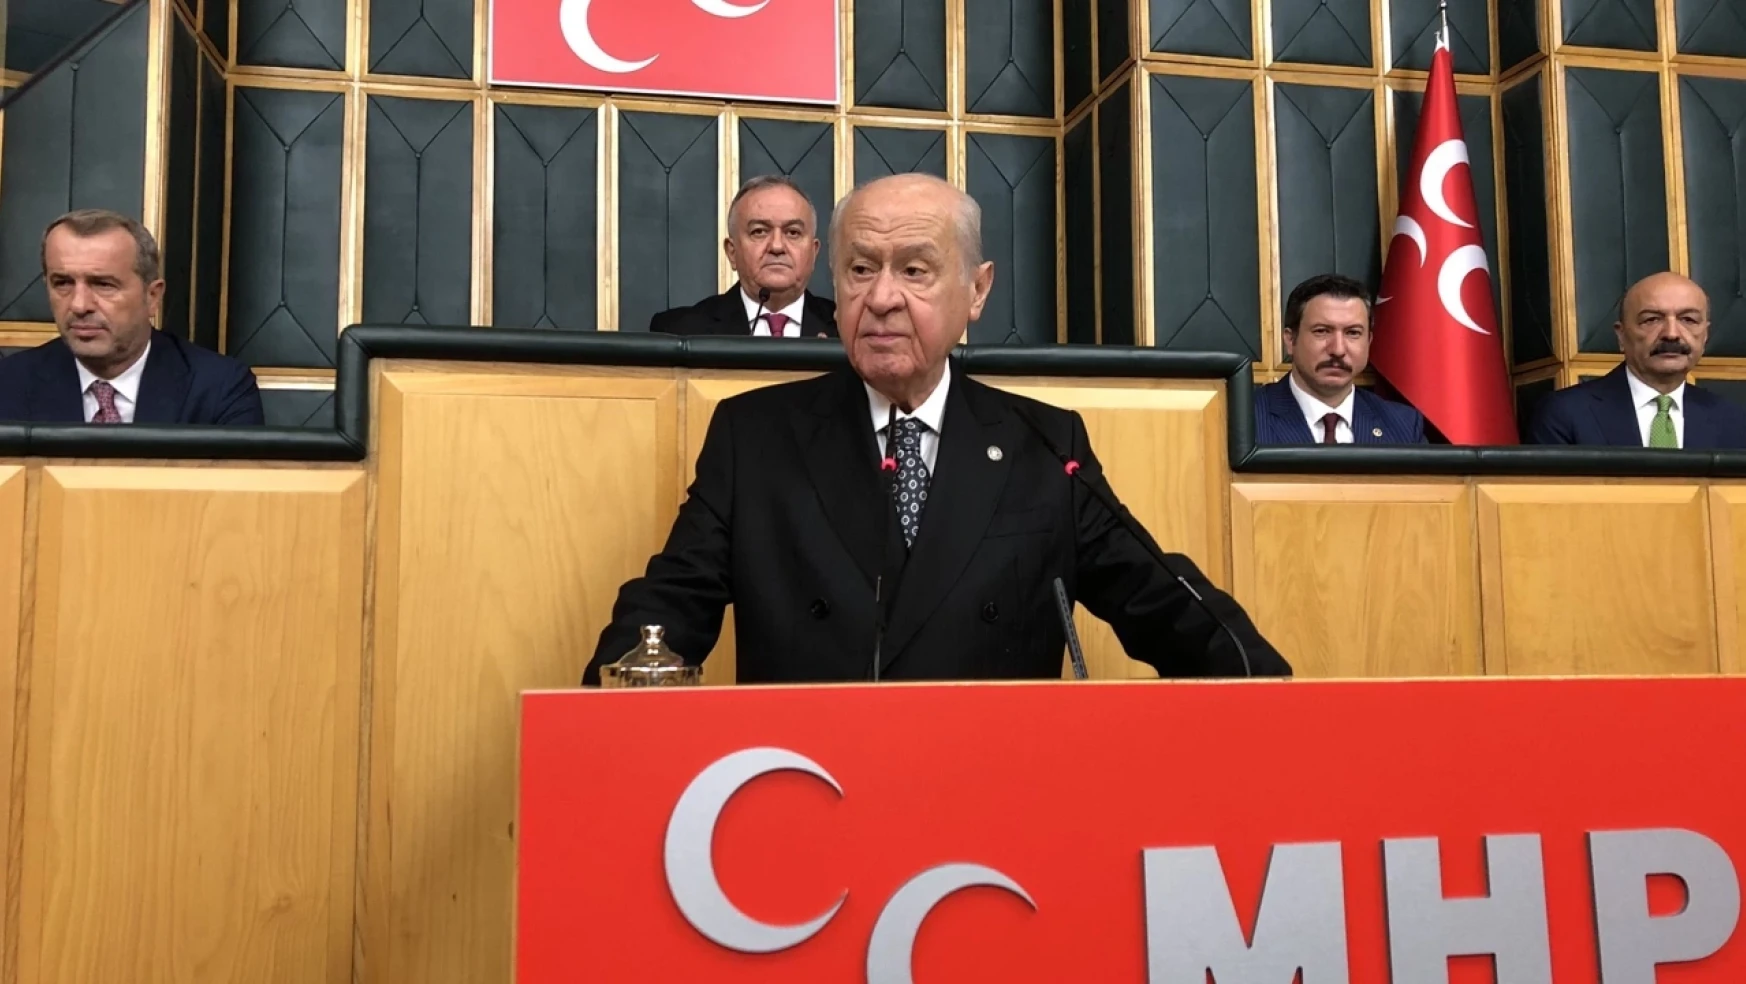 MHP Lideri Devlet Bahçeli: Anayasa Mahkemesi zulmün yanında, milletin ve devletin karşısında bir mihrak olarak sivrilmiştir